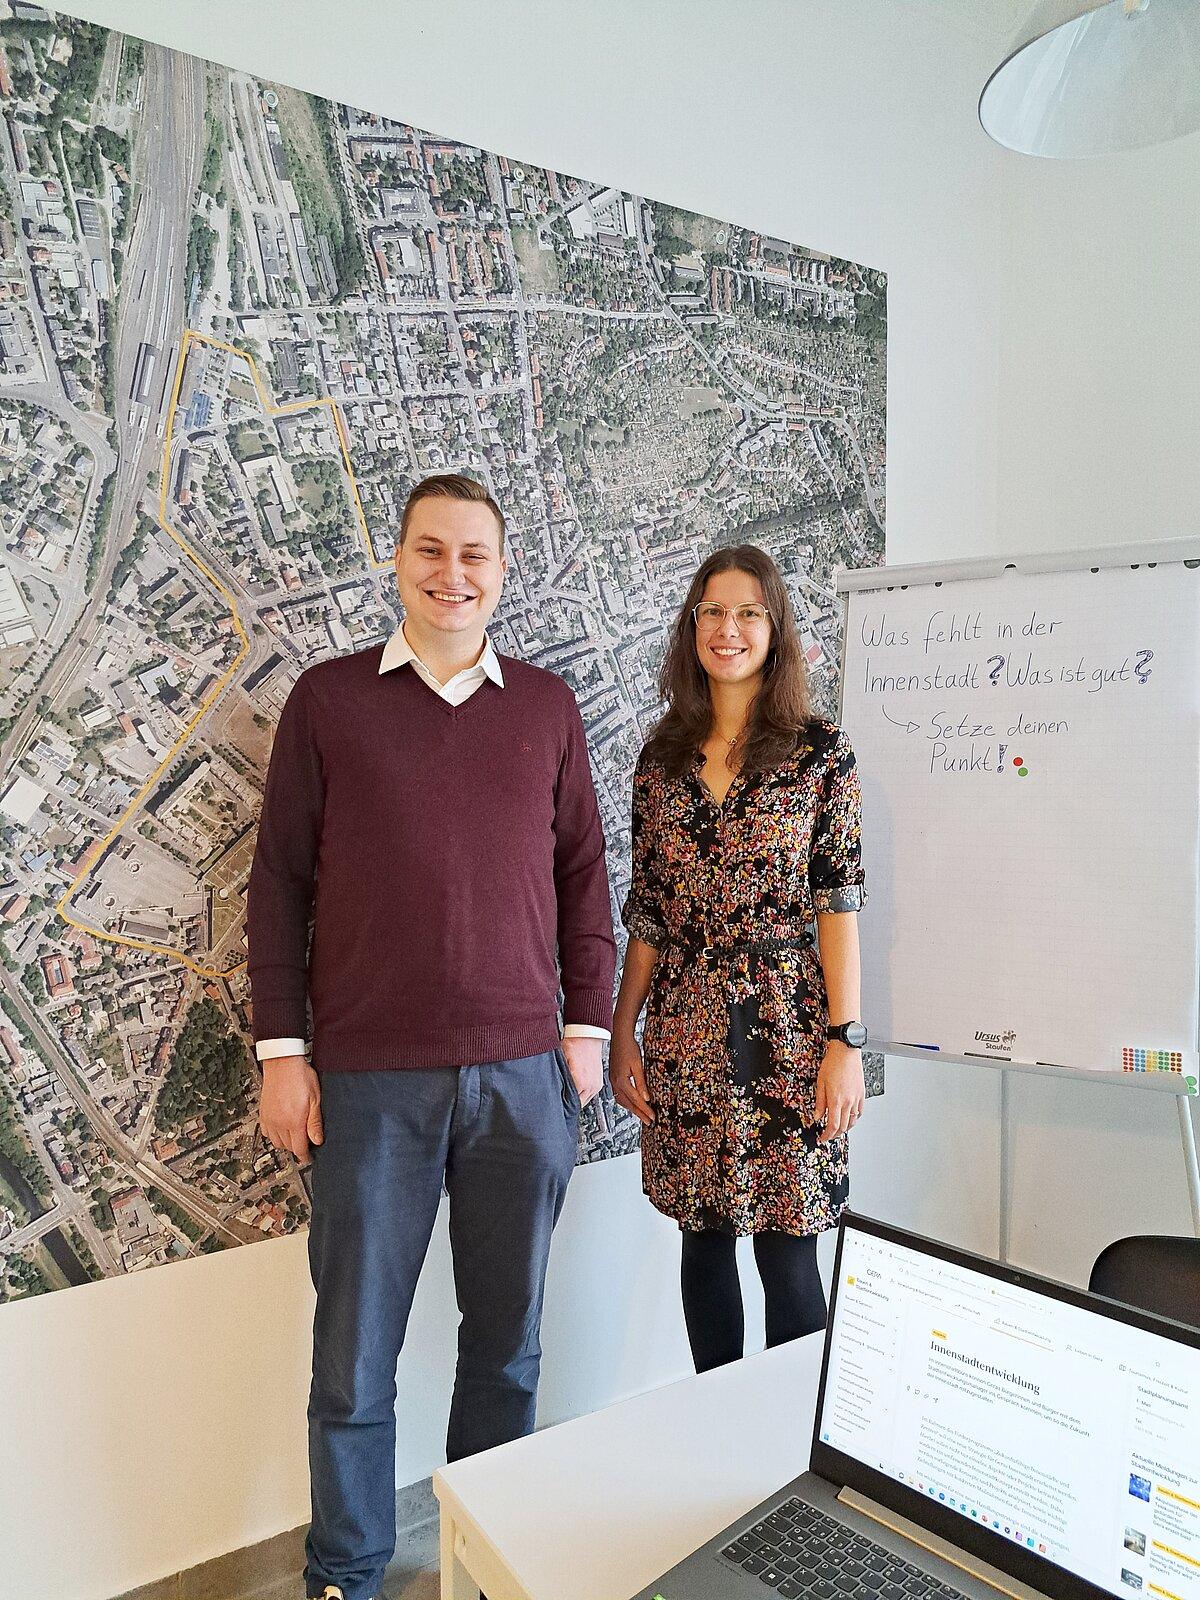 Geras neue Citymanagerin Amelie Becker (links) mit Stadtentwicklungsmanager Lukas Schomacker im Innenstadtbüro am Markt 6